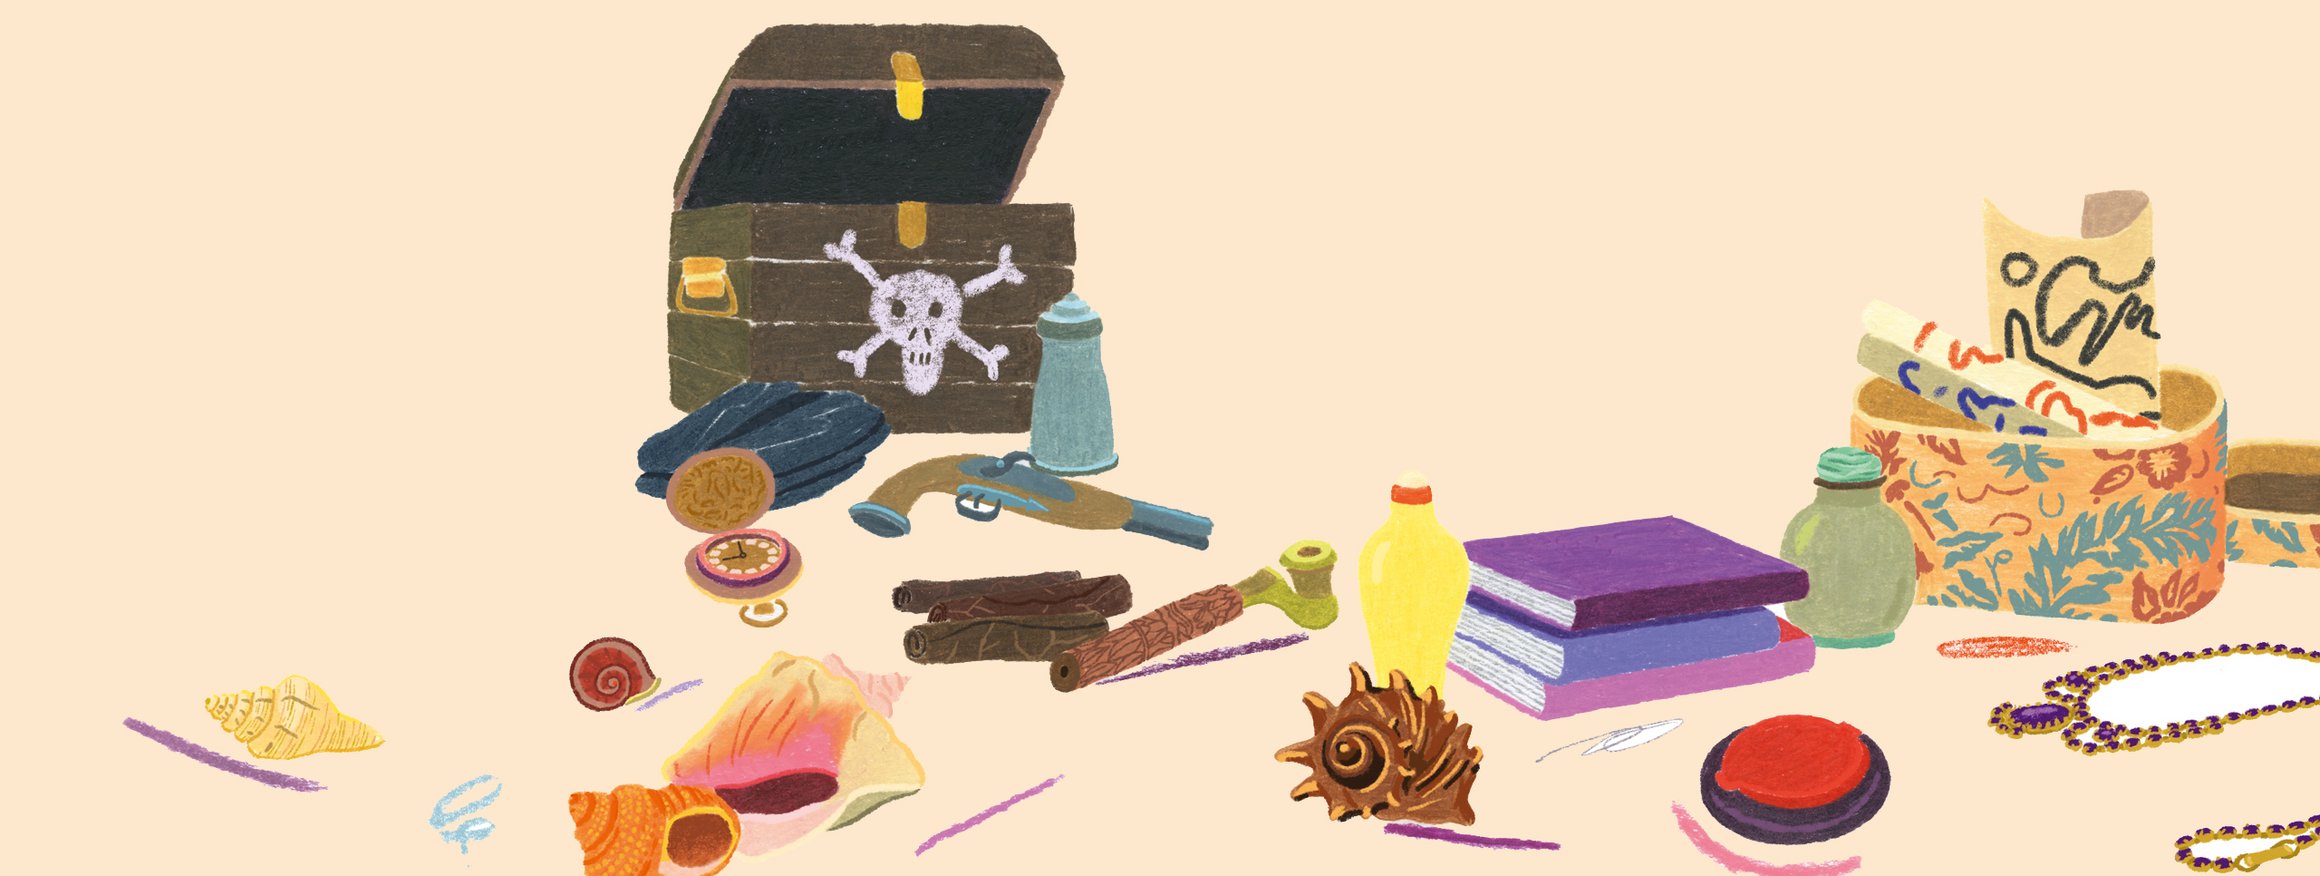 Die Illustration zeigt eine Schatzkiste aus Holz mit einem Totenkopf darauf gemalt, daneben liegen eine Uhr, eine Schusswaffe, Thermoskanne, ein Buch andere Dinge